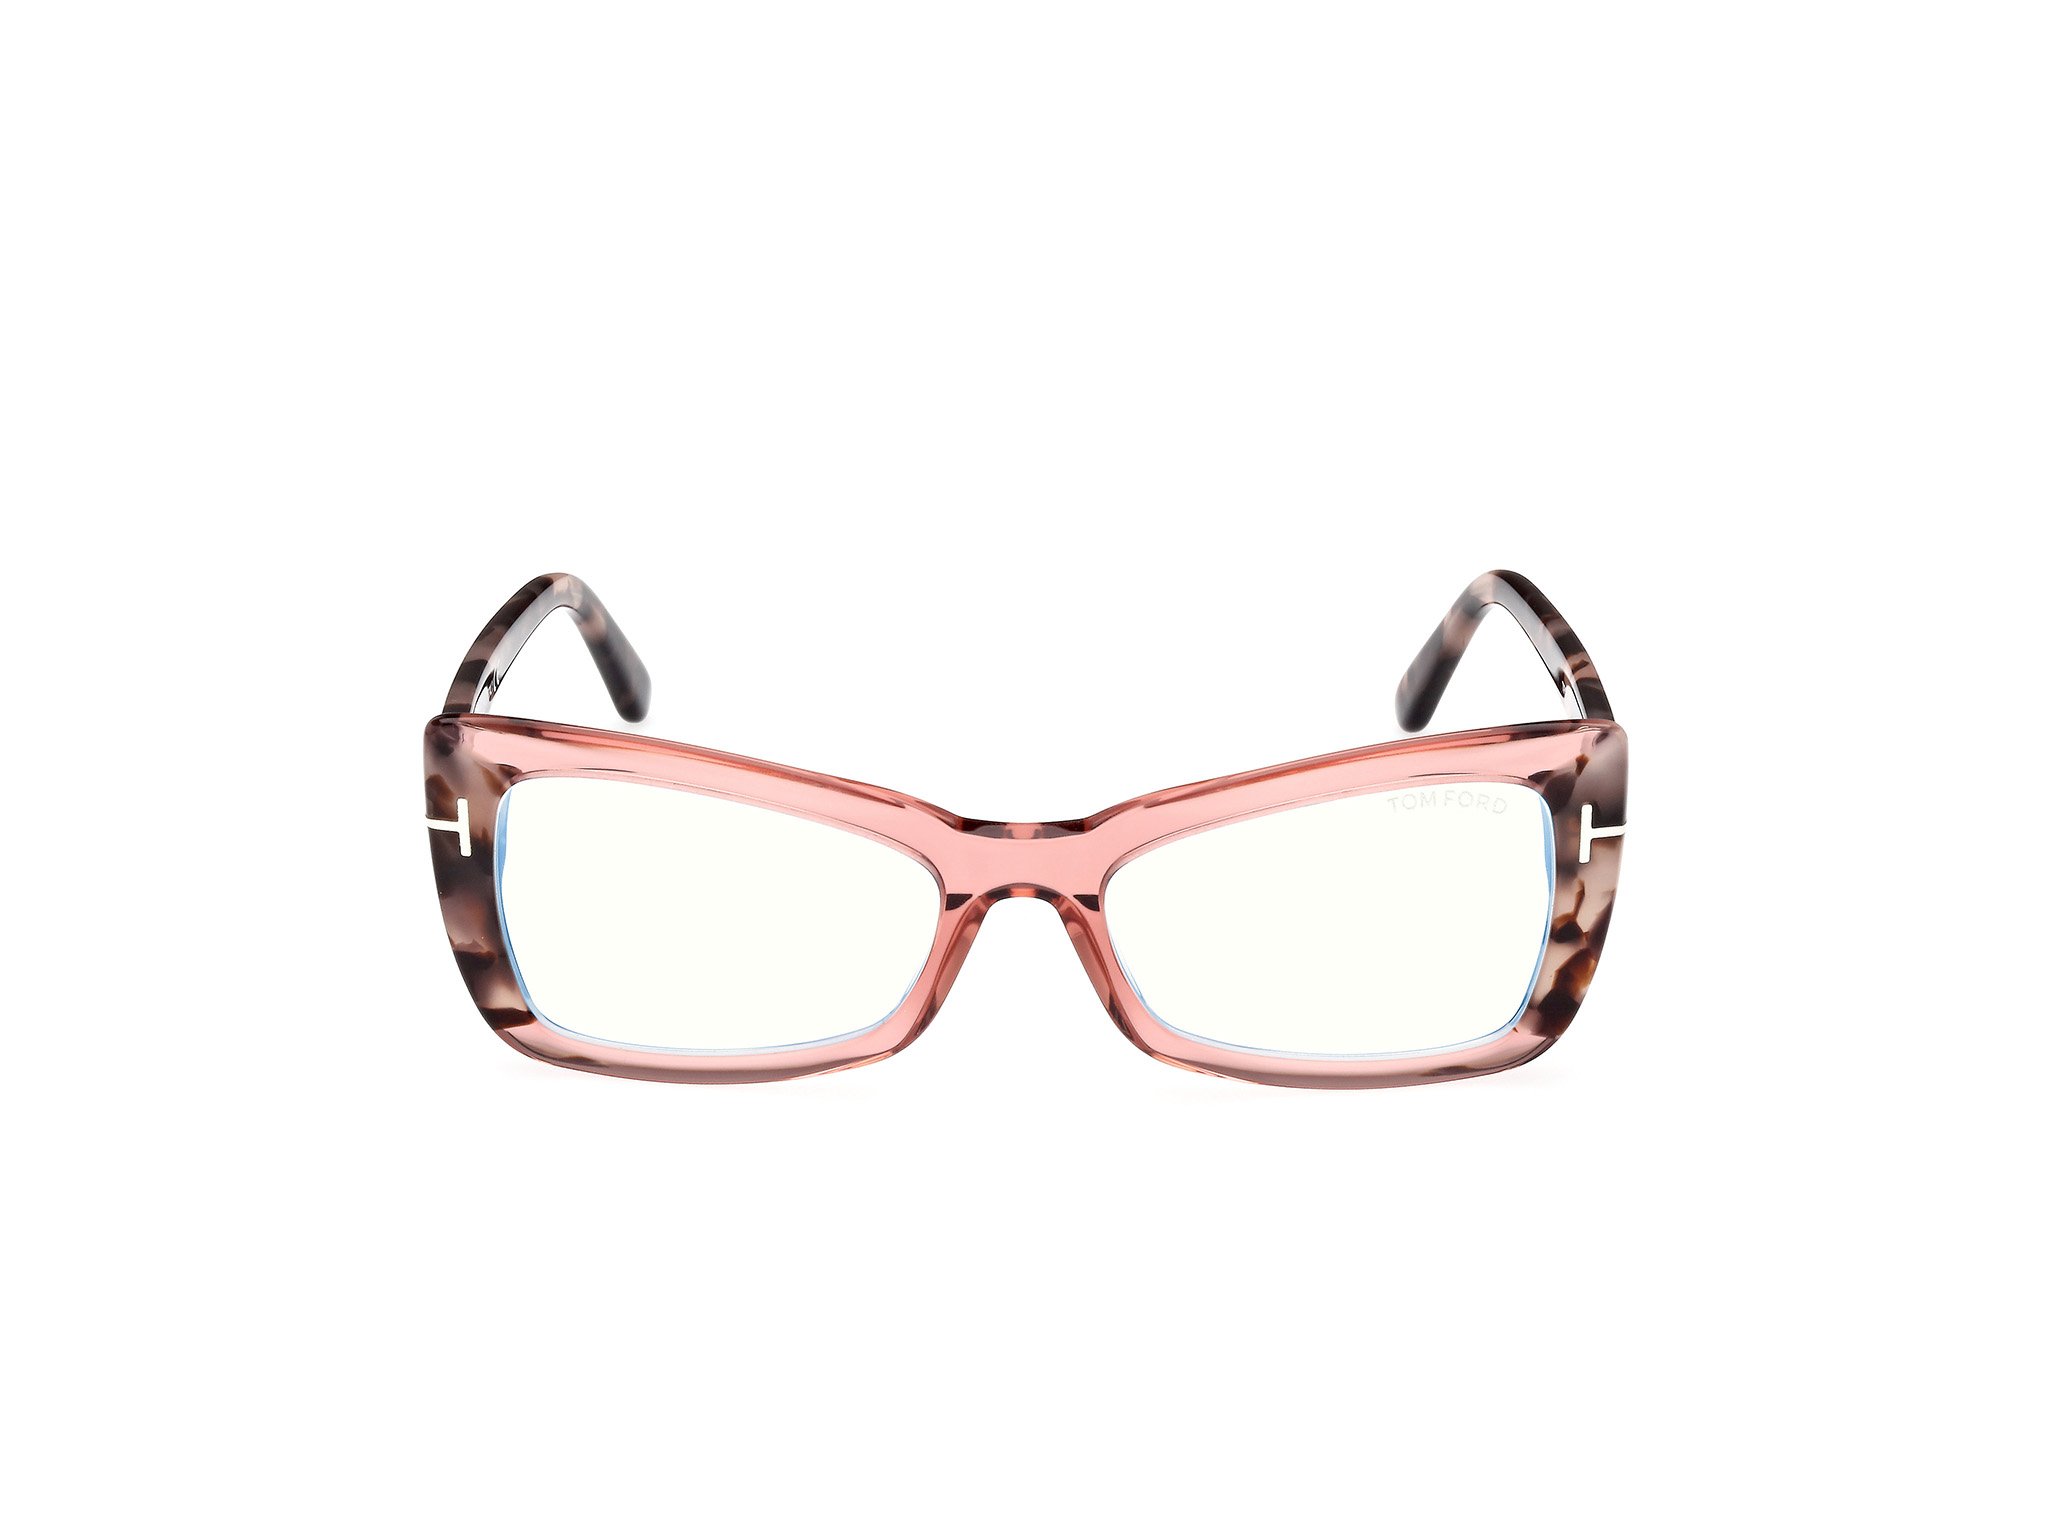 Das Bild zeigt die Korrektionsbrille FT5879-B 072 von der Marke Tom Ford in pink/havanna.